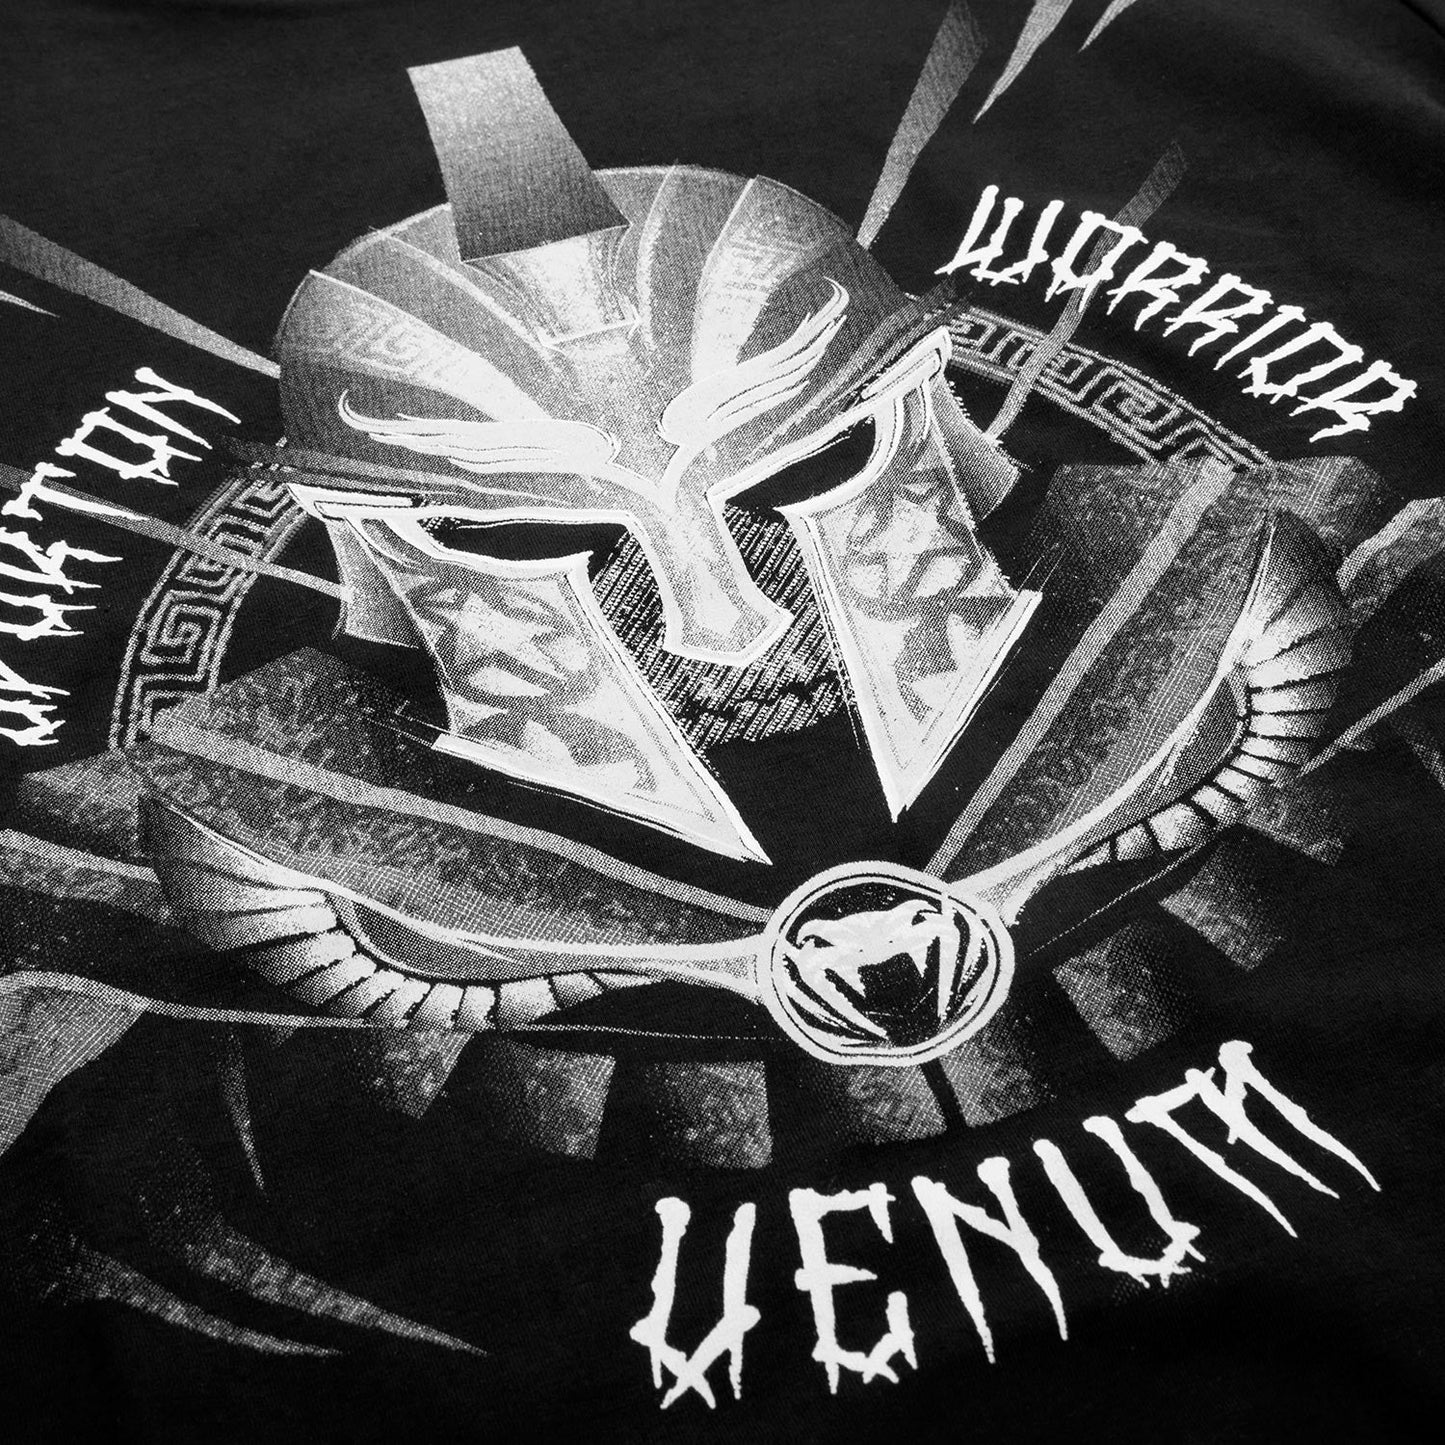 Camiseta Venum Gladiator Kids - Negro/Blanco